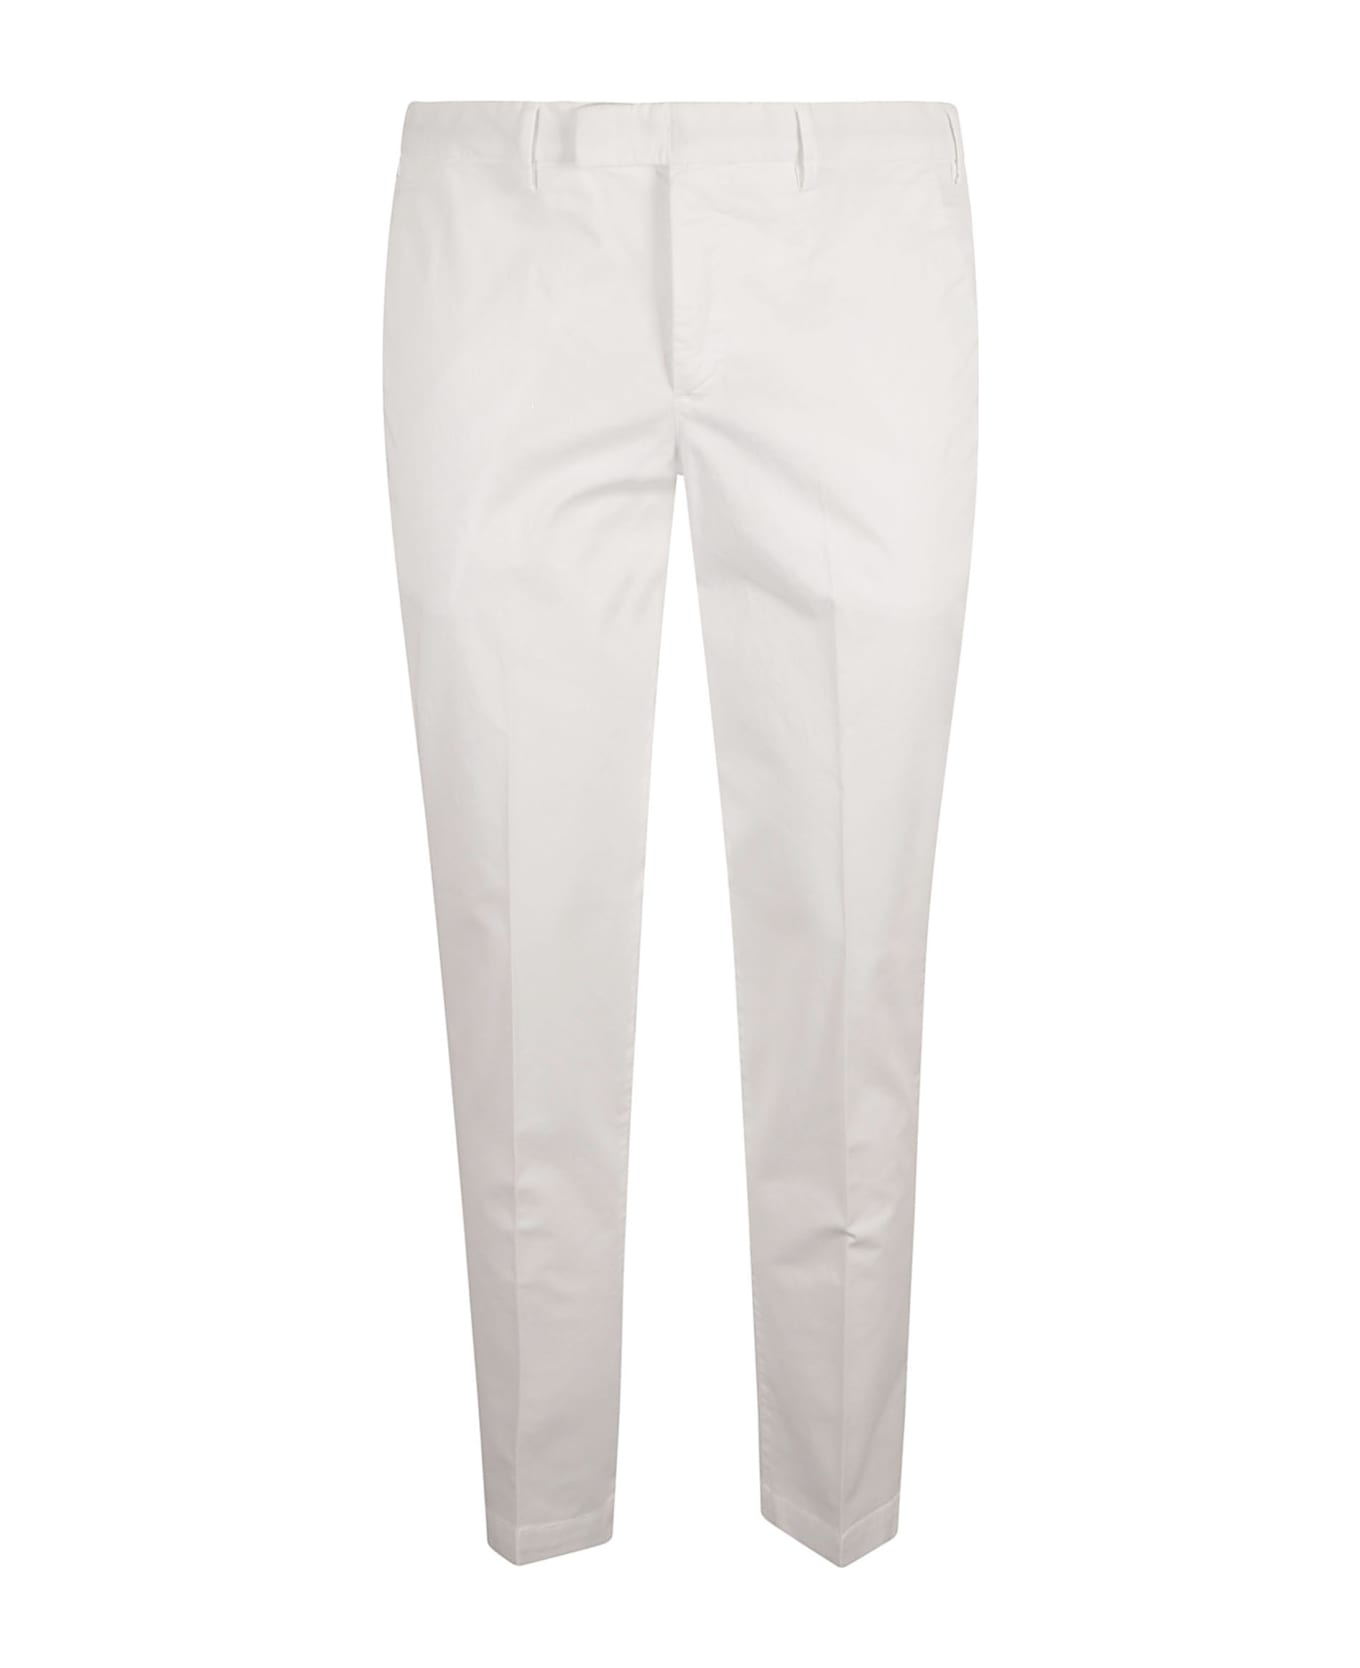 PT Torino Slim Fit Plain Trousers - White